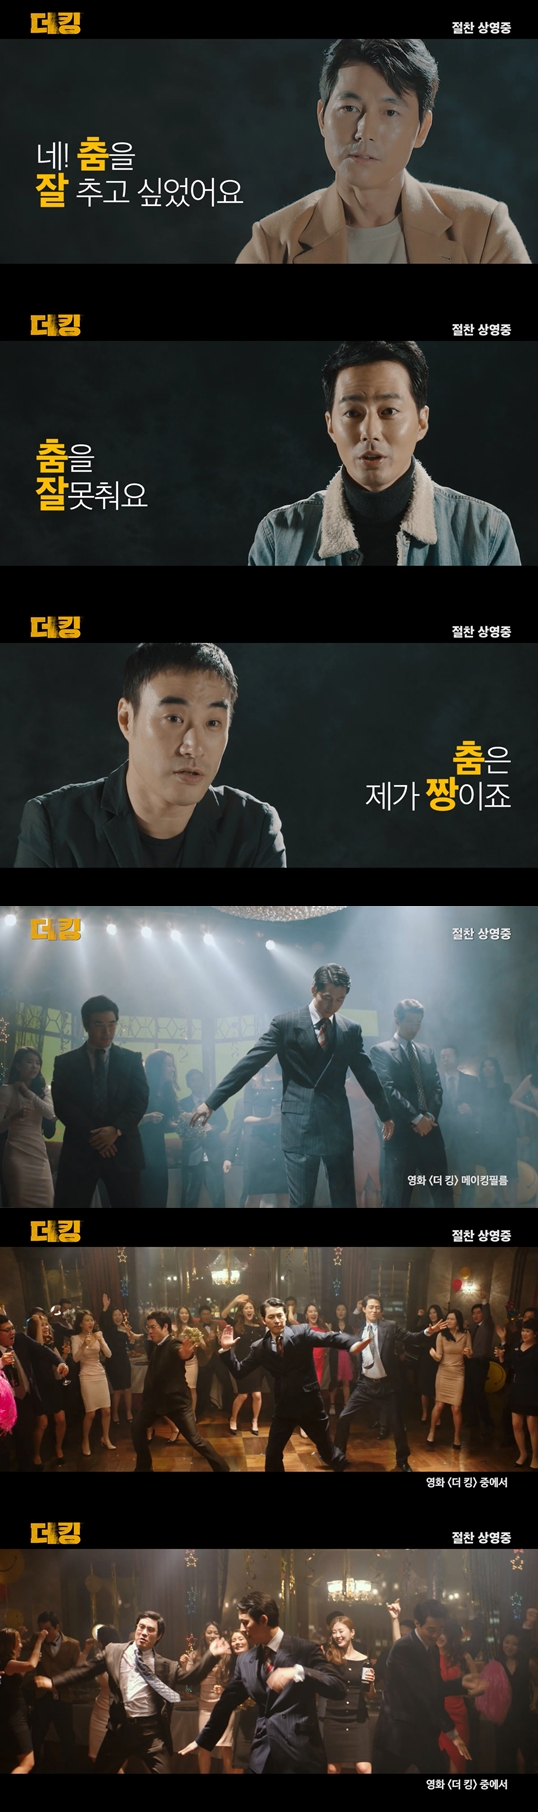 '더 킹' 400만 돌파 기념 댄스 영상 공개, 정우성 "클론 '난' 공부했다"